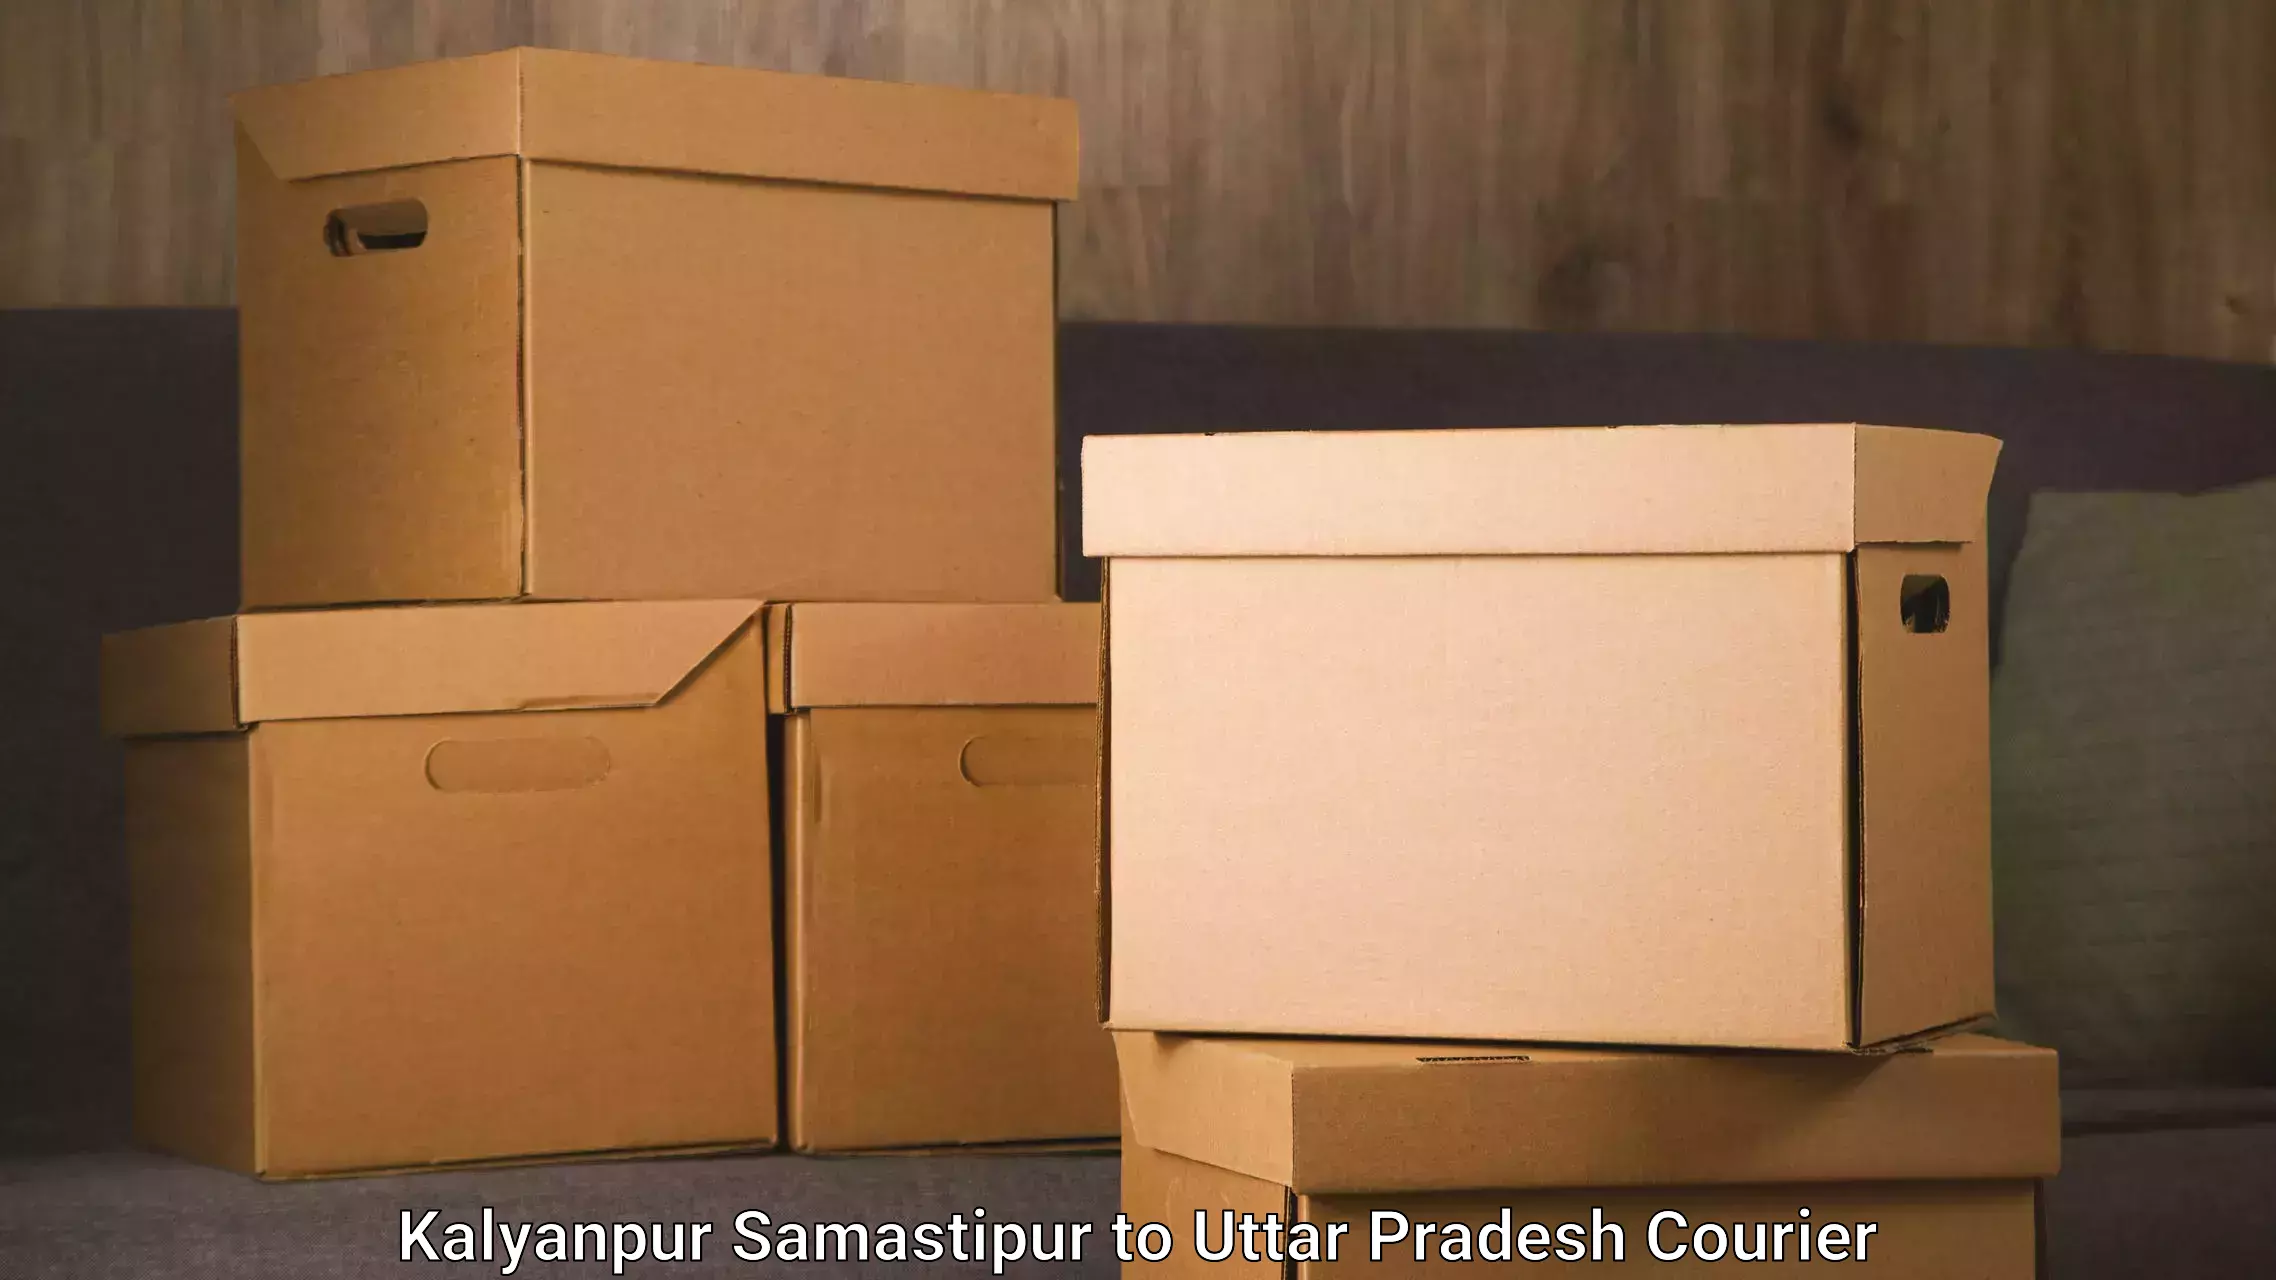 Furniture relocation experts Kalyanpur Samastipur to Kumarganj